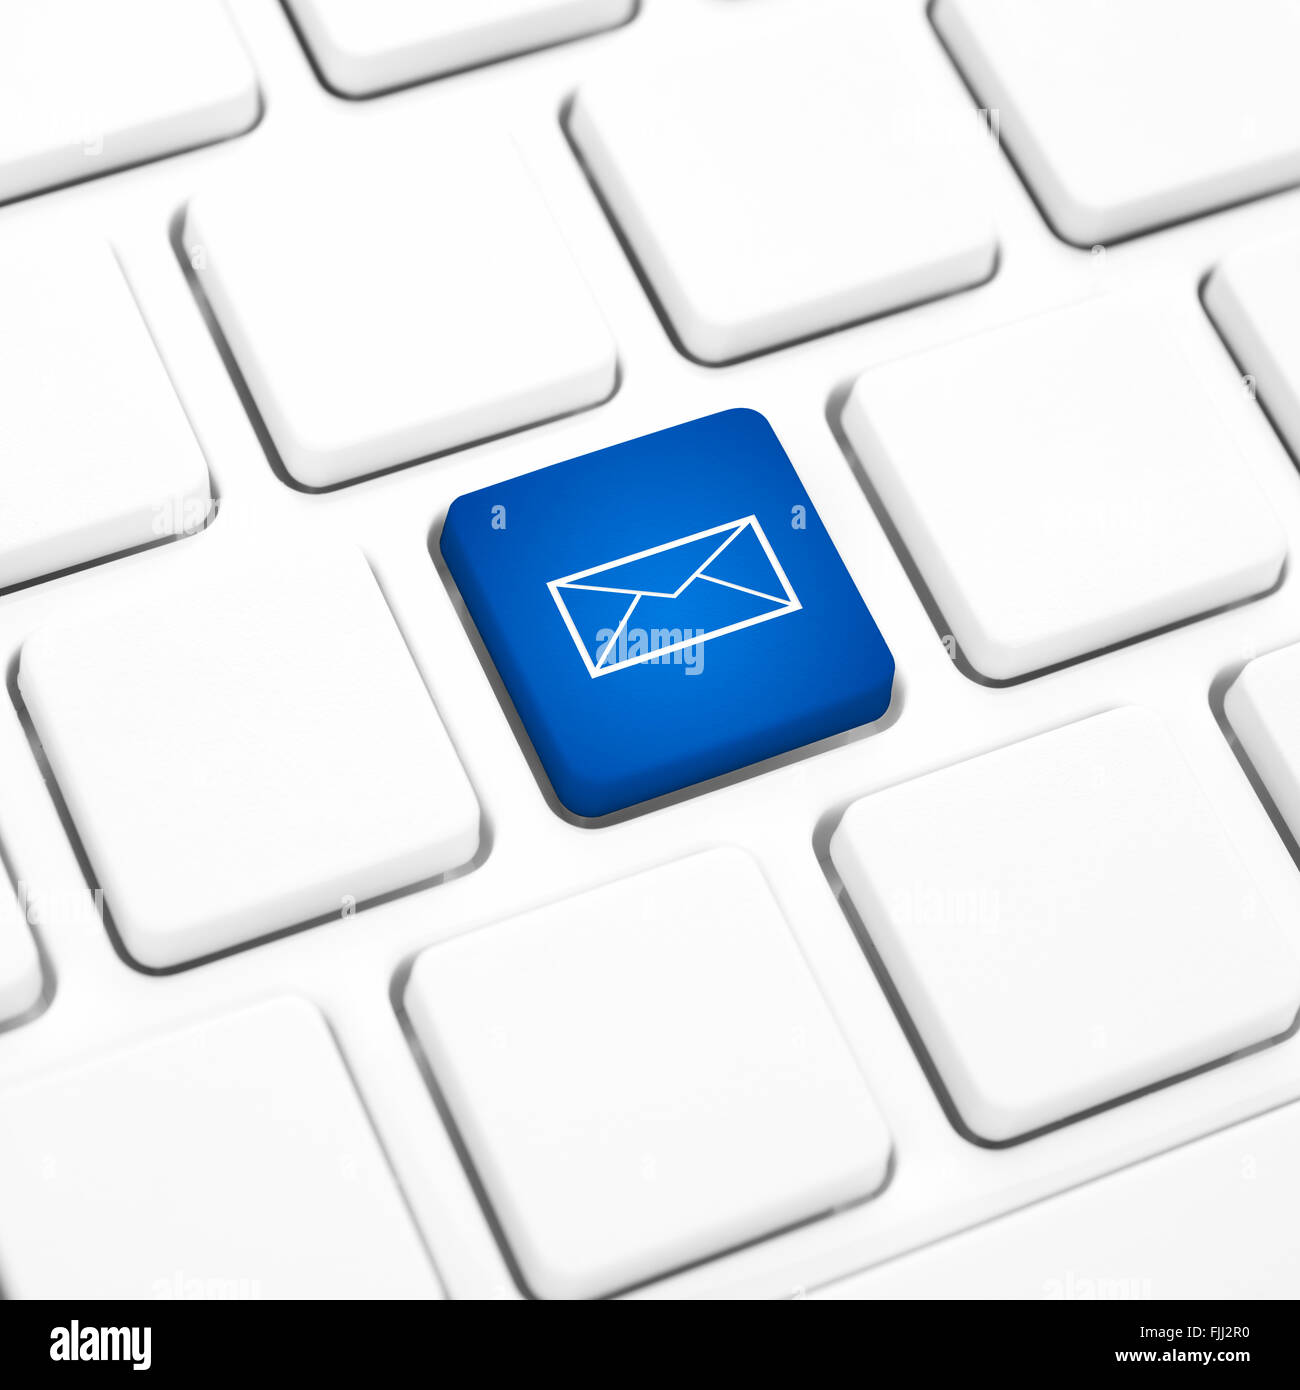 Web-Mail-Netzwerk-Business-Konzept, blaue Taste oder Taste auf weiße Tastatur. Stockfoto